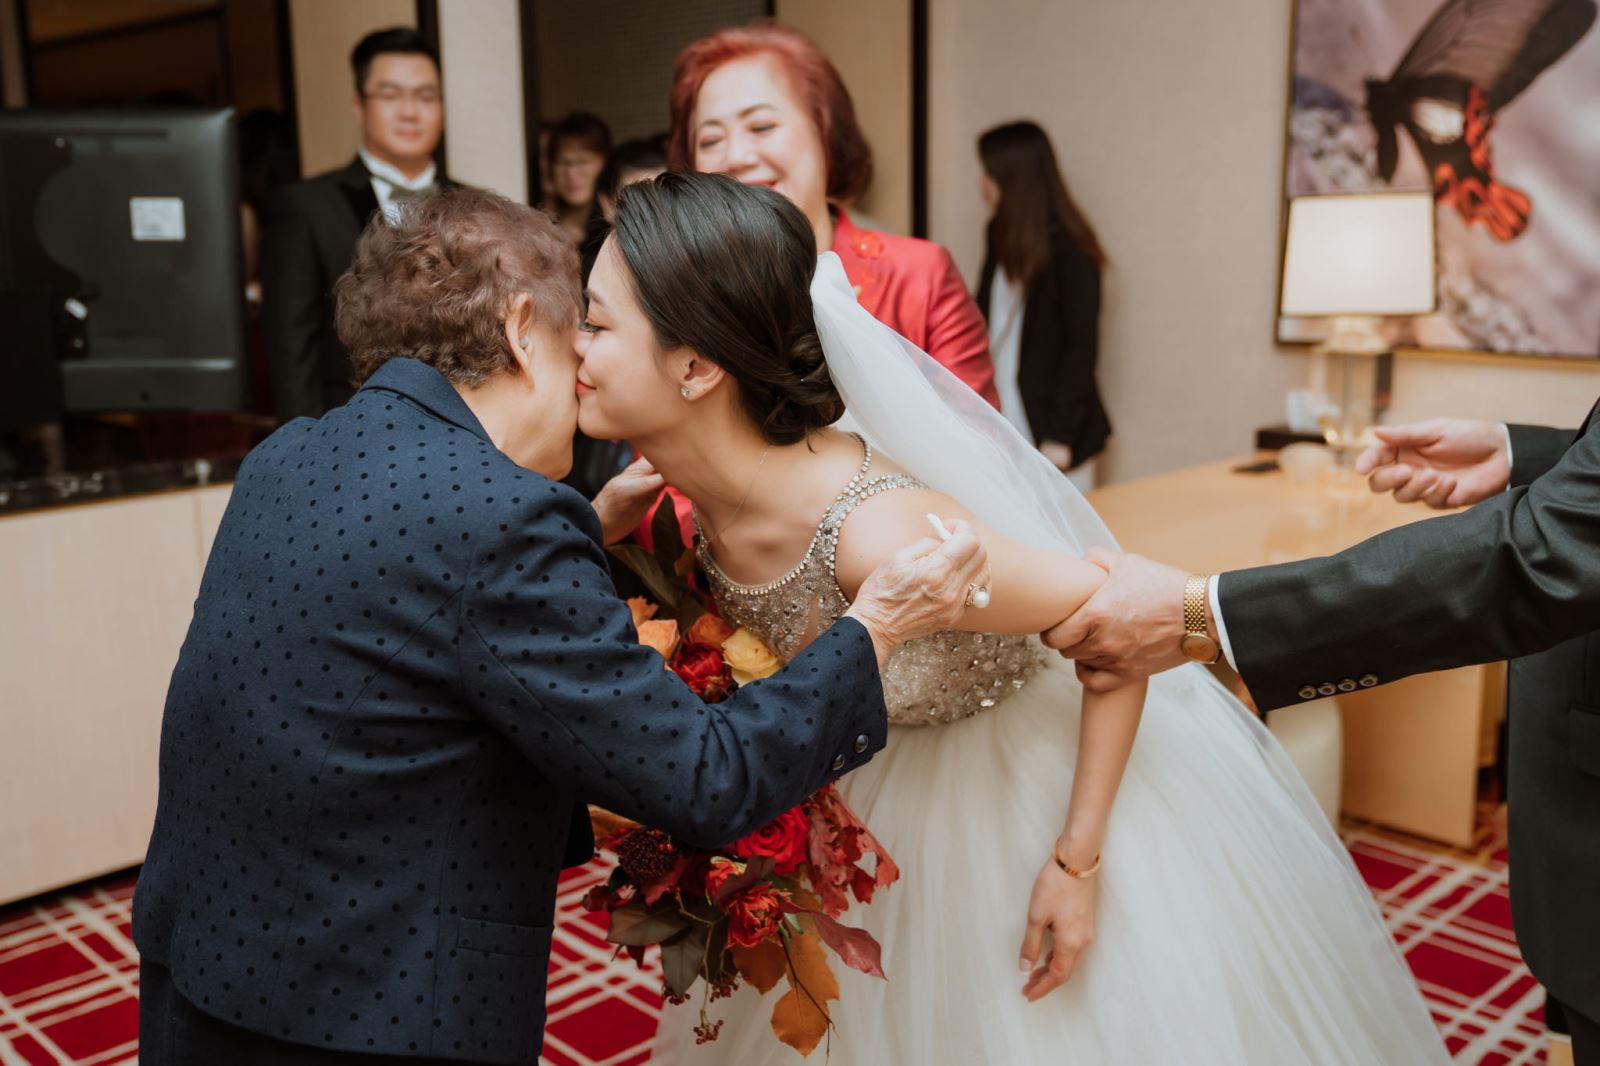 婚禮主持人純涵引導迎娶時,孫女給祖母的一個親吻